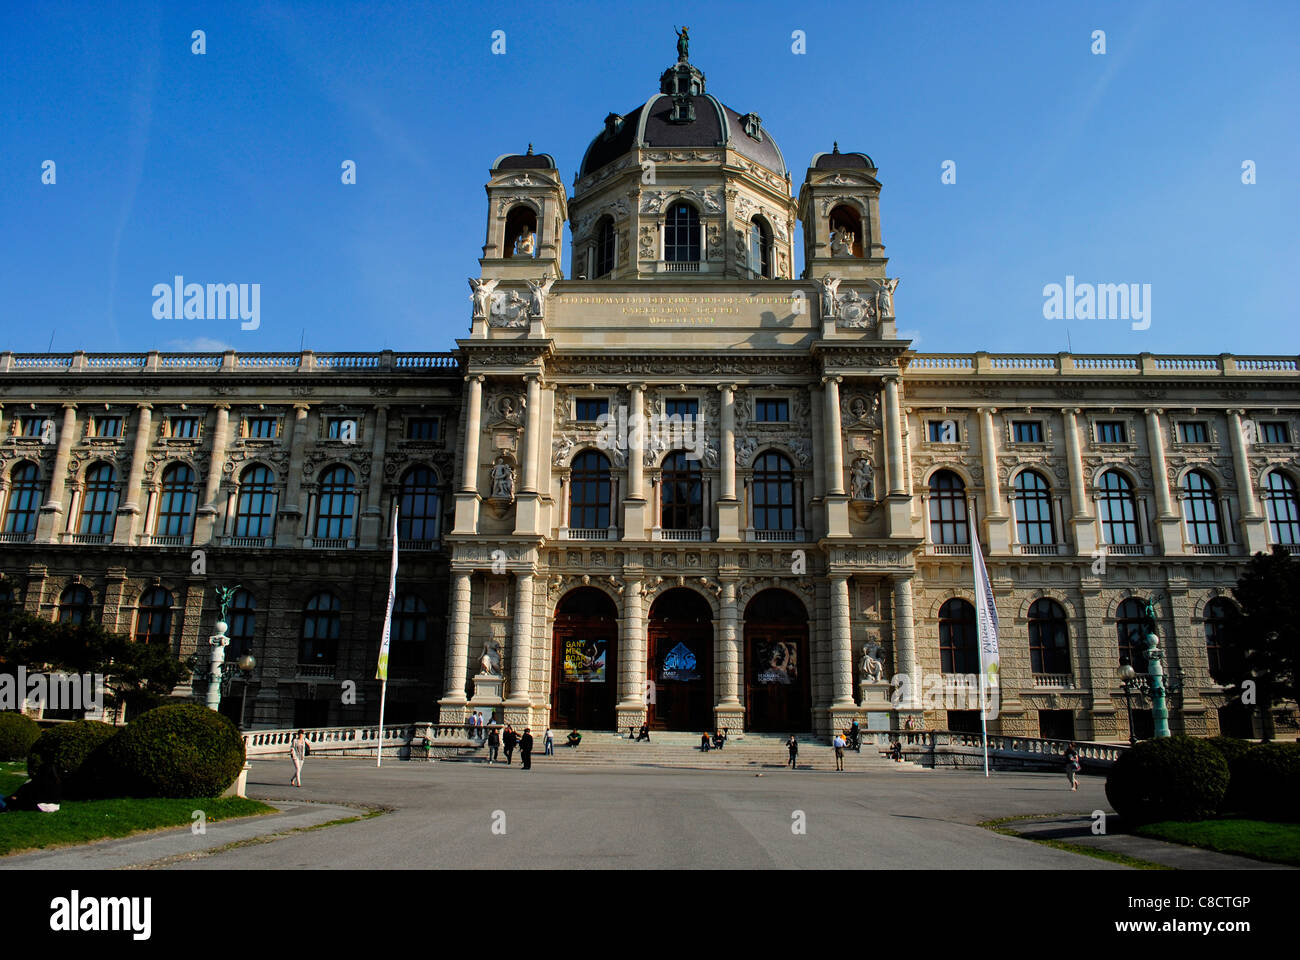 Kunsthistorisches Museum. Vienna, Austria Stock Photo